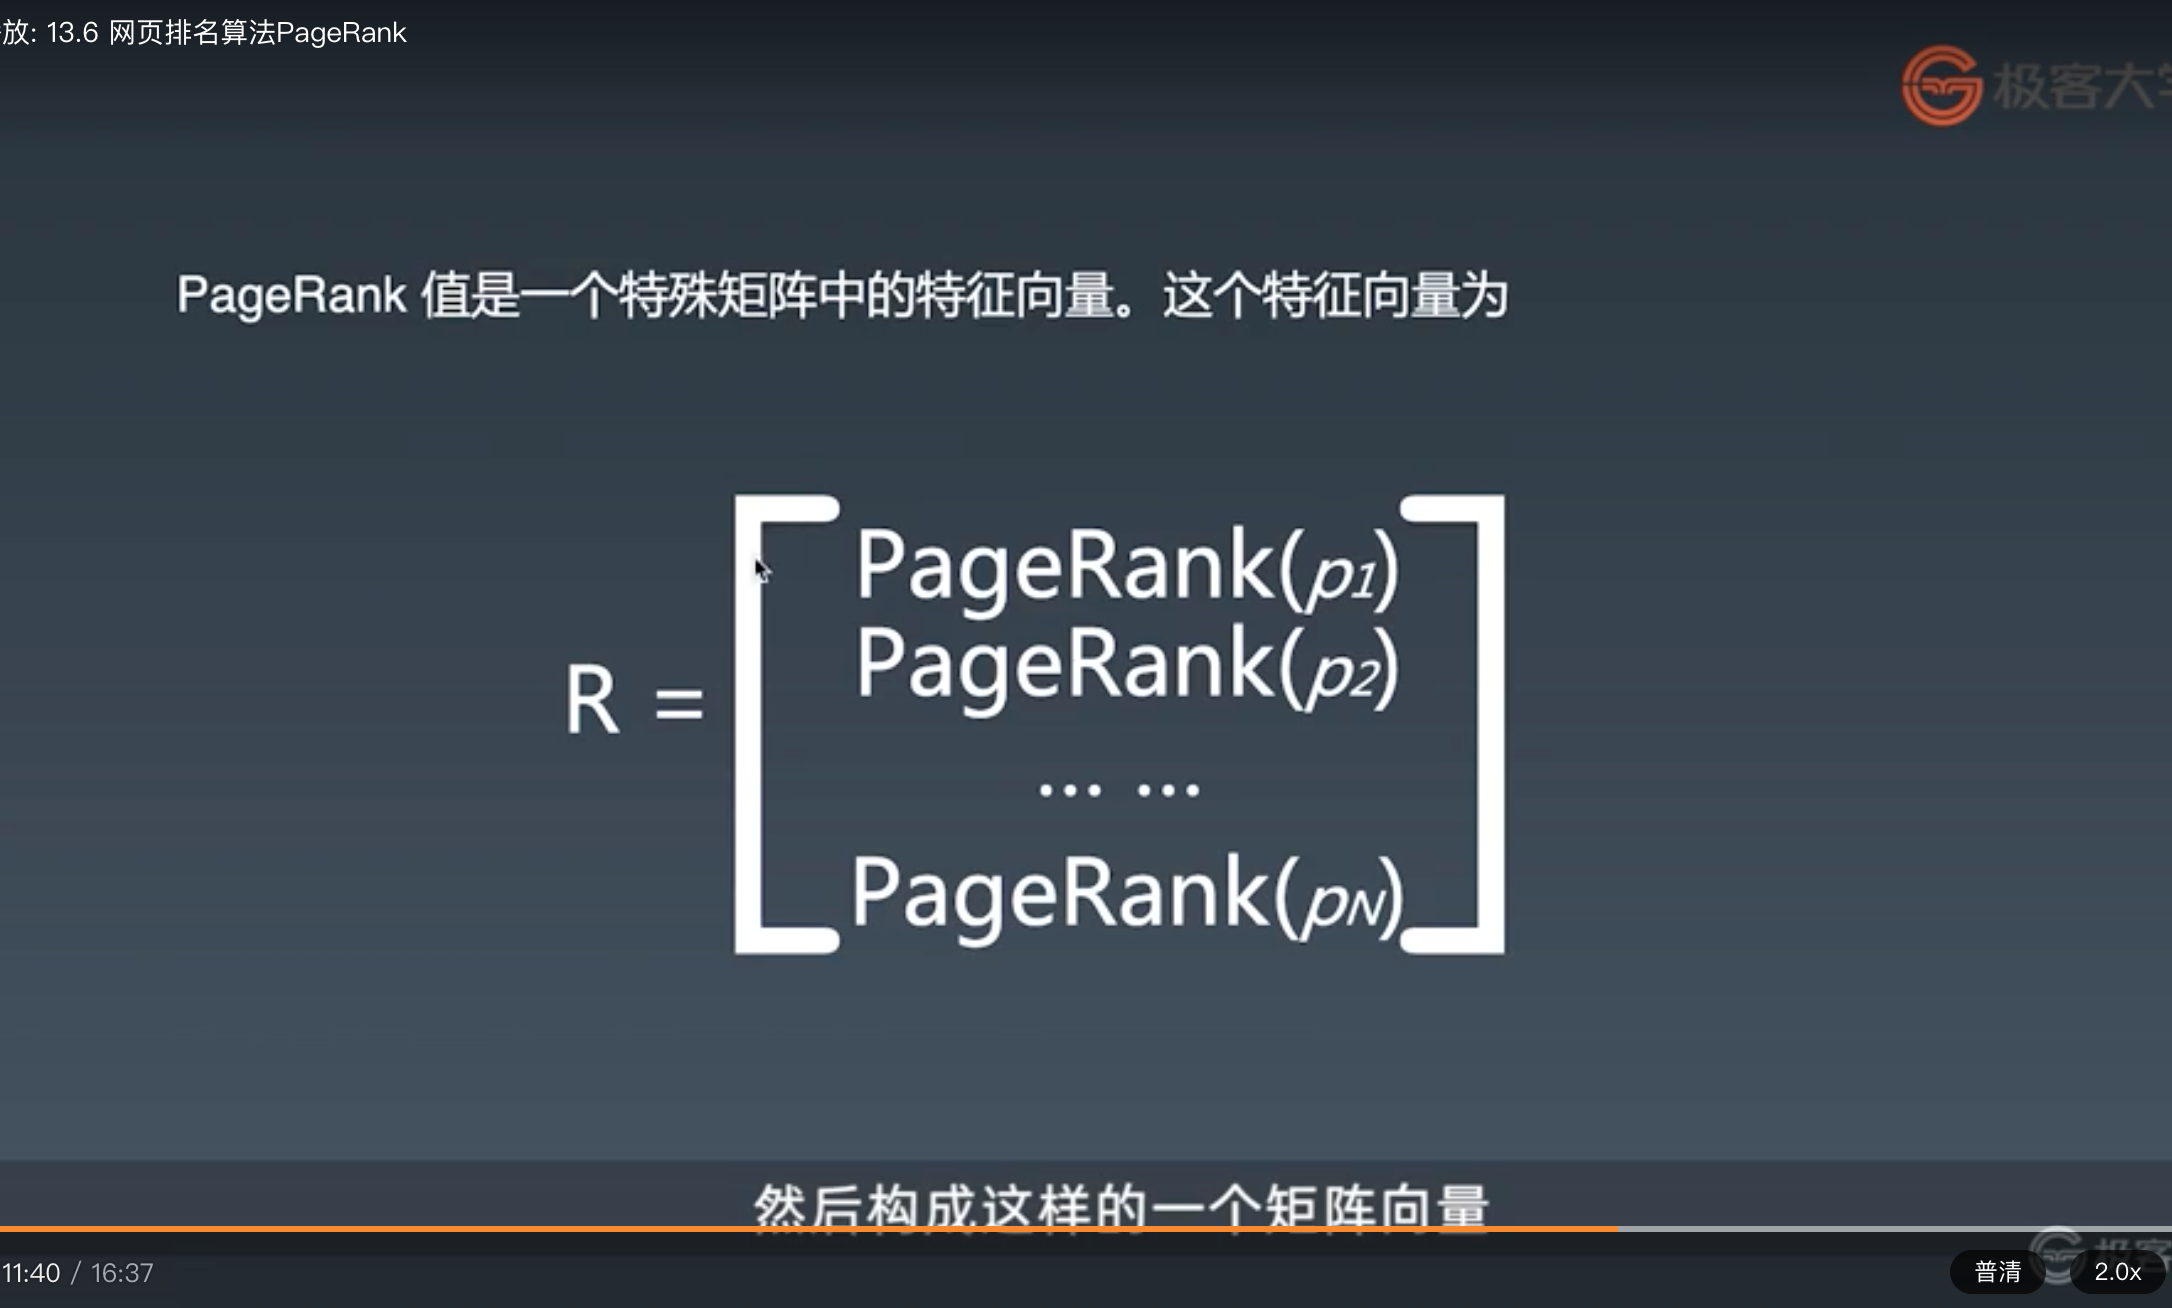 13.6-PageRank 特征项量表示.png